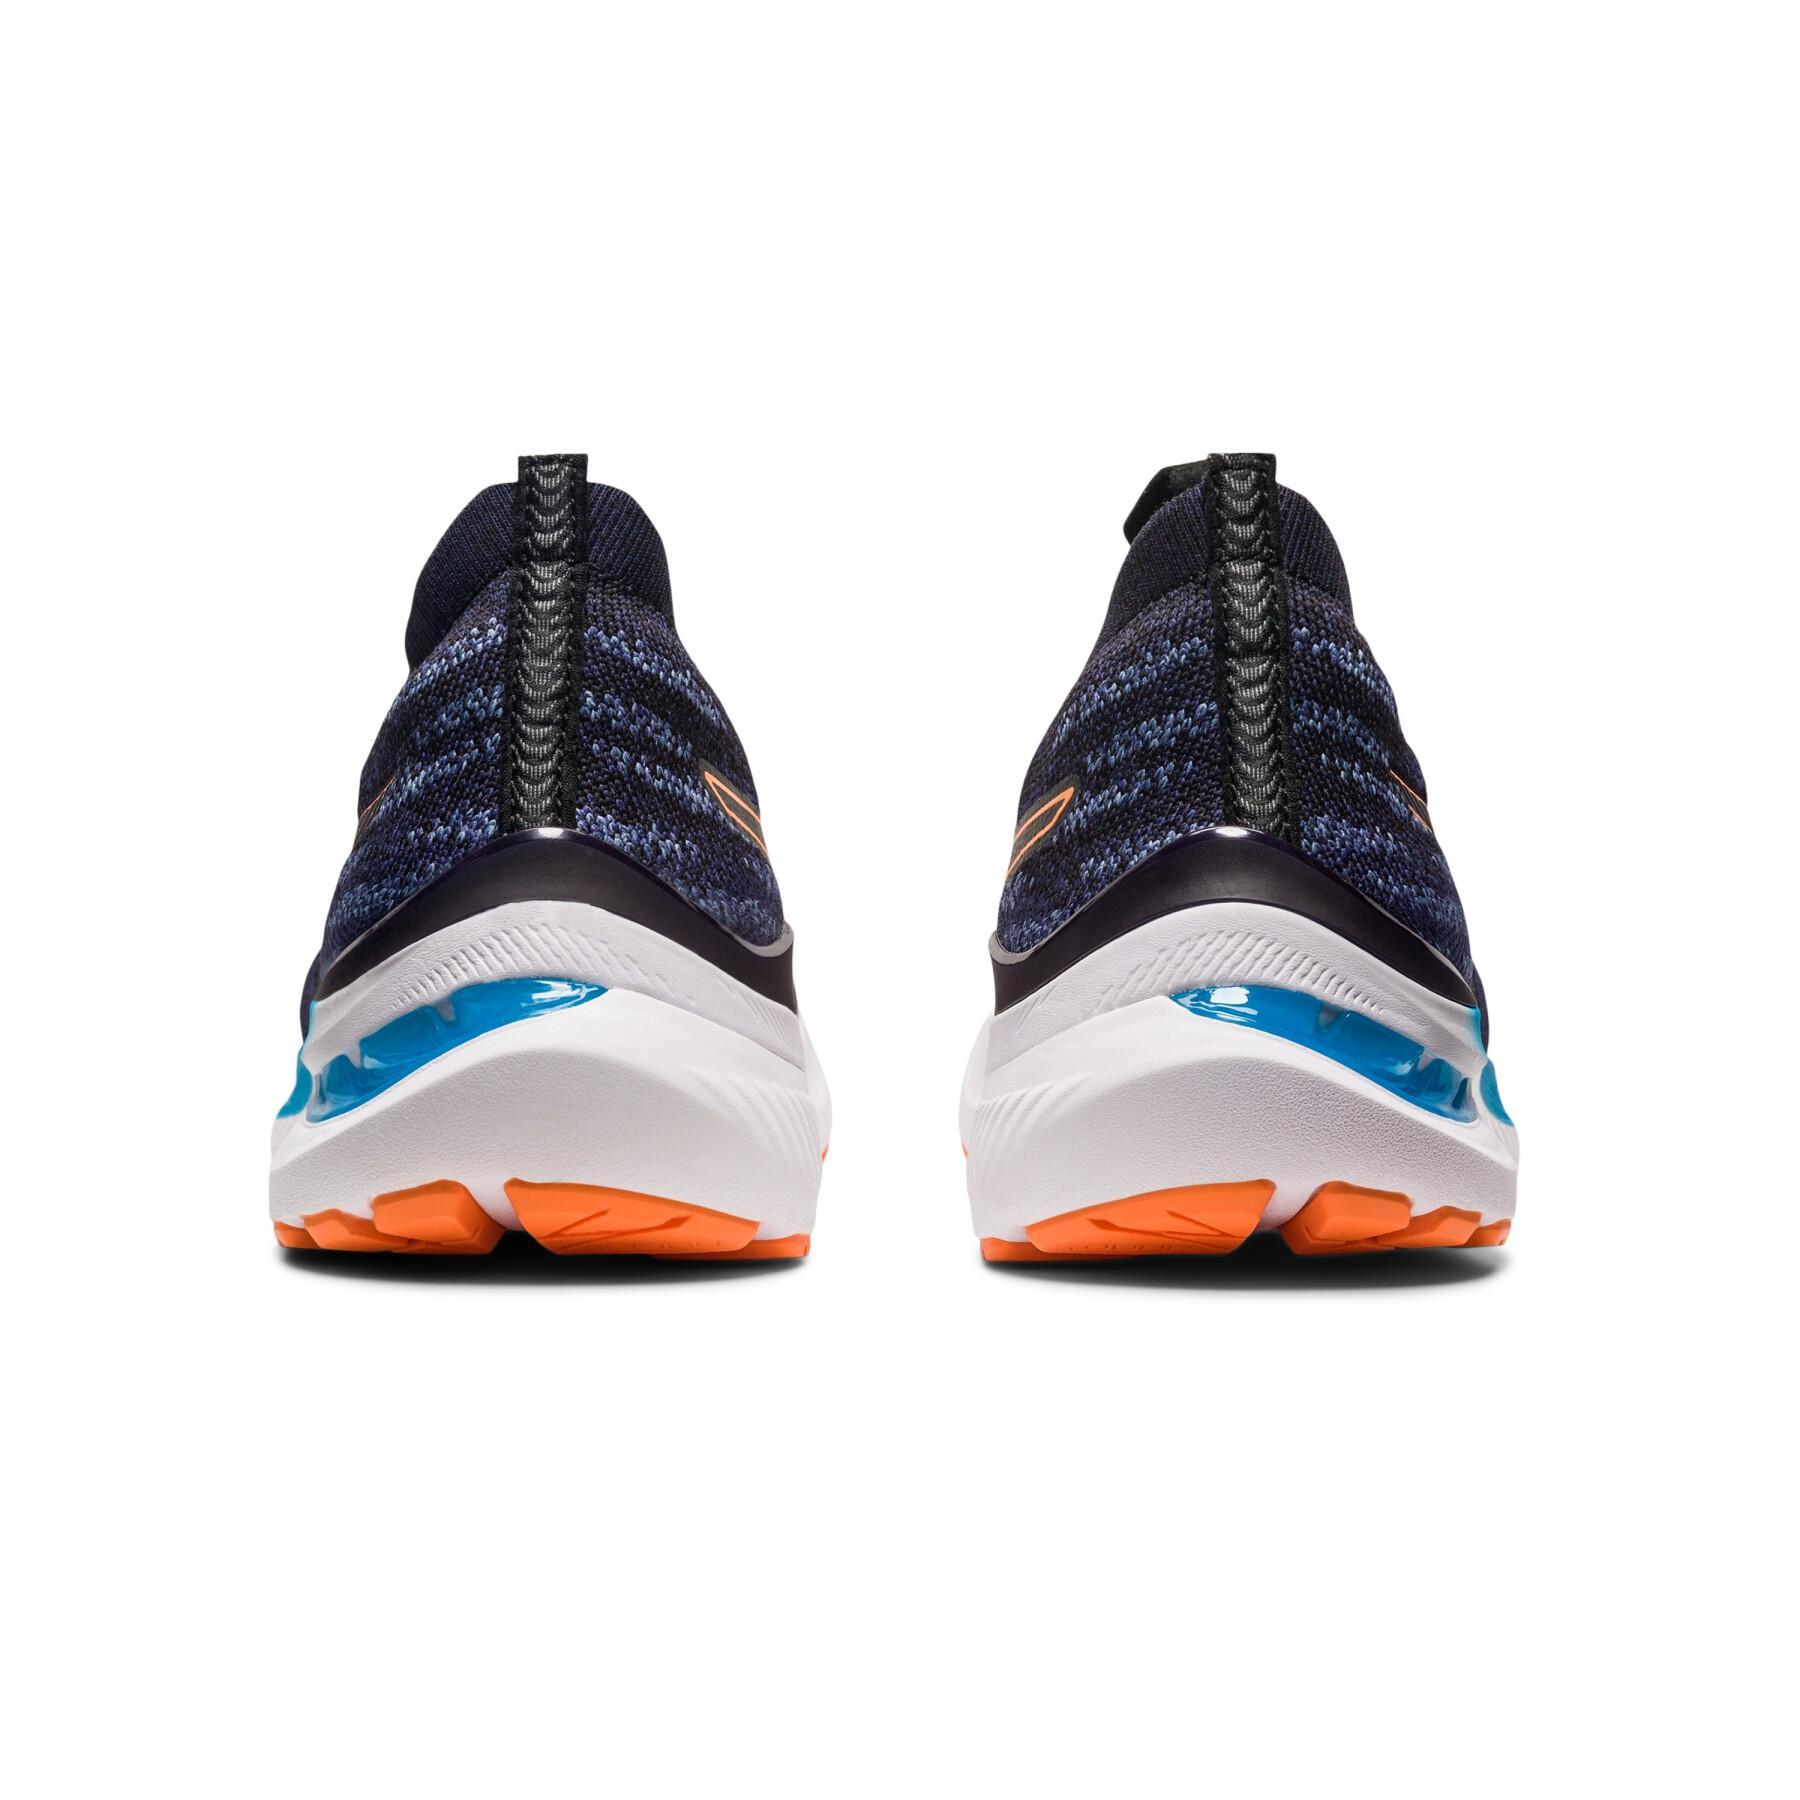 Running shoes Asics Gel-Kayano 29 - MK